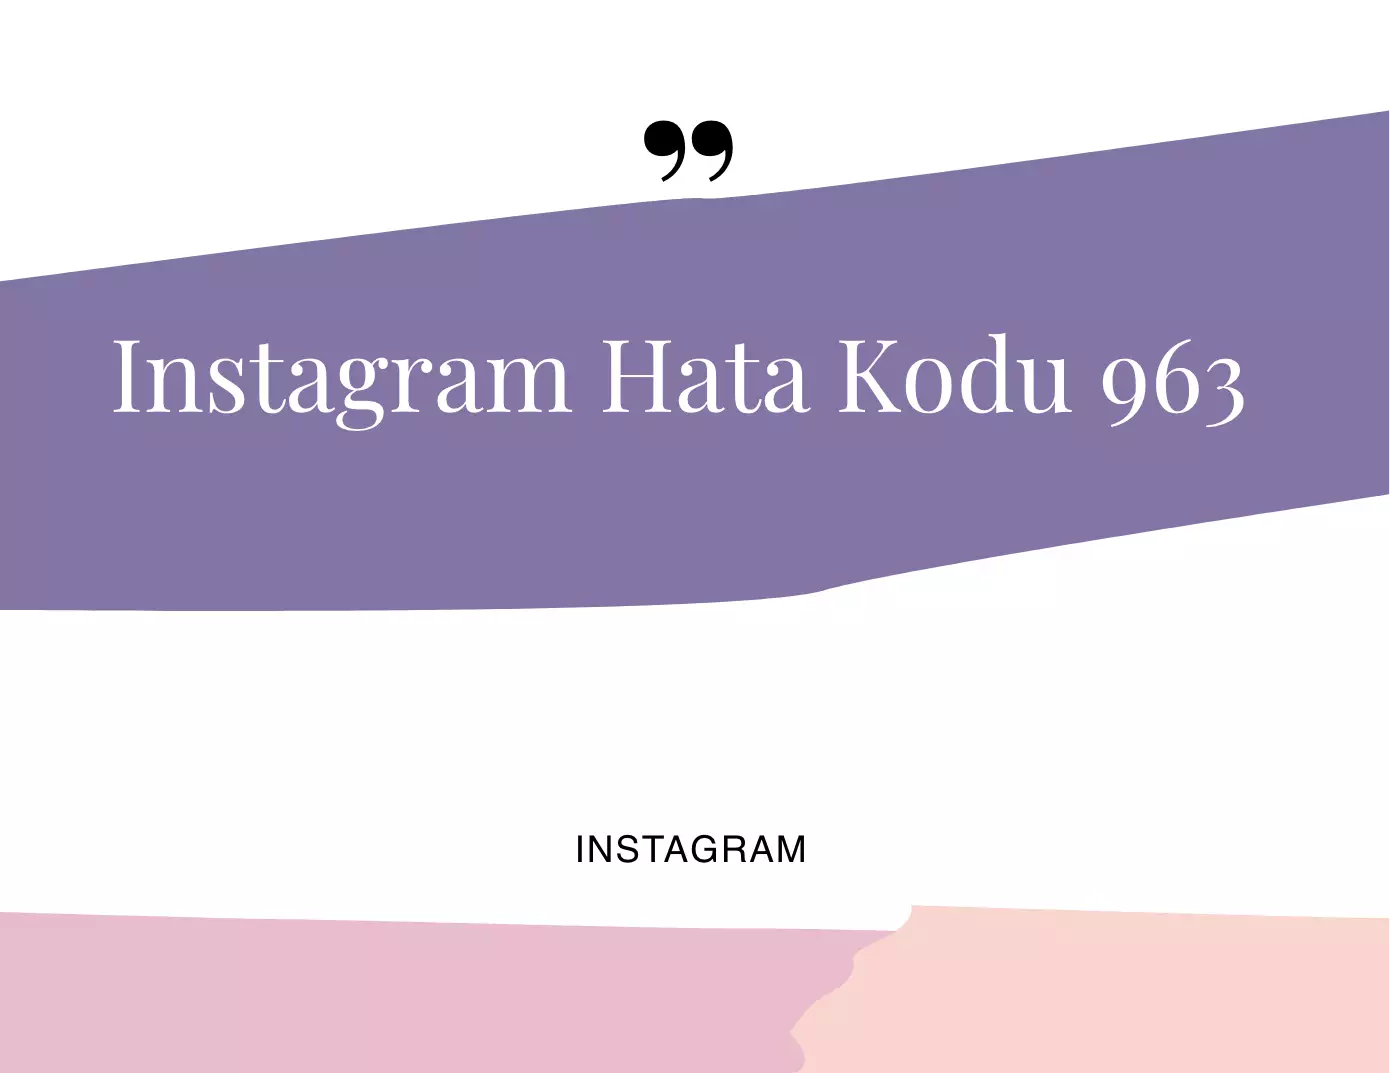 Instagram Hata Kodu 963 Nasıl Çözülür?